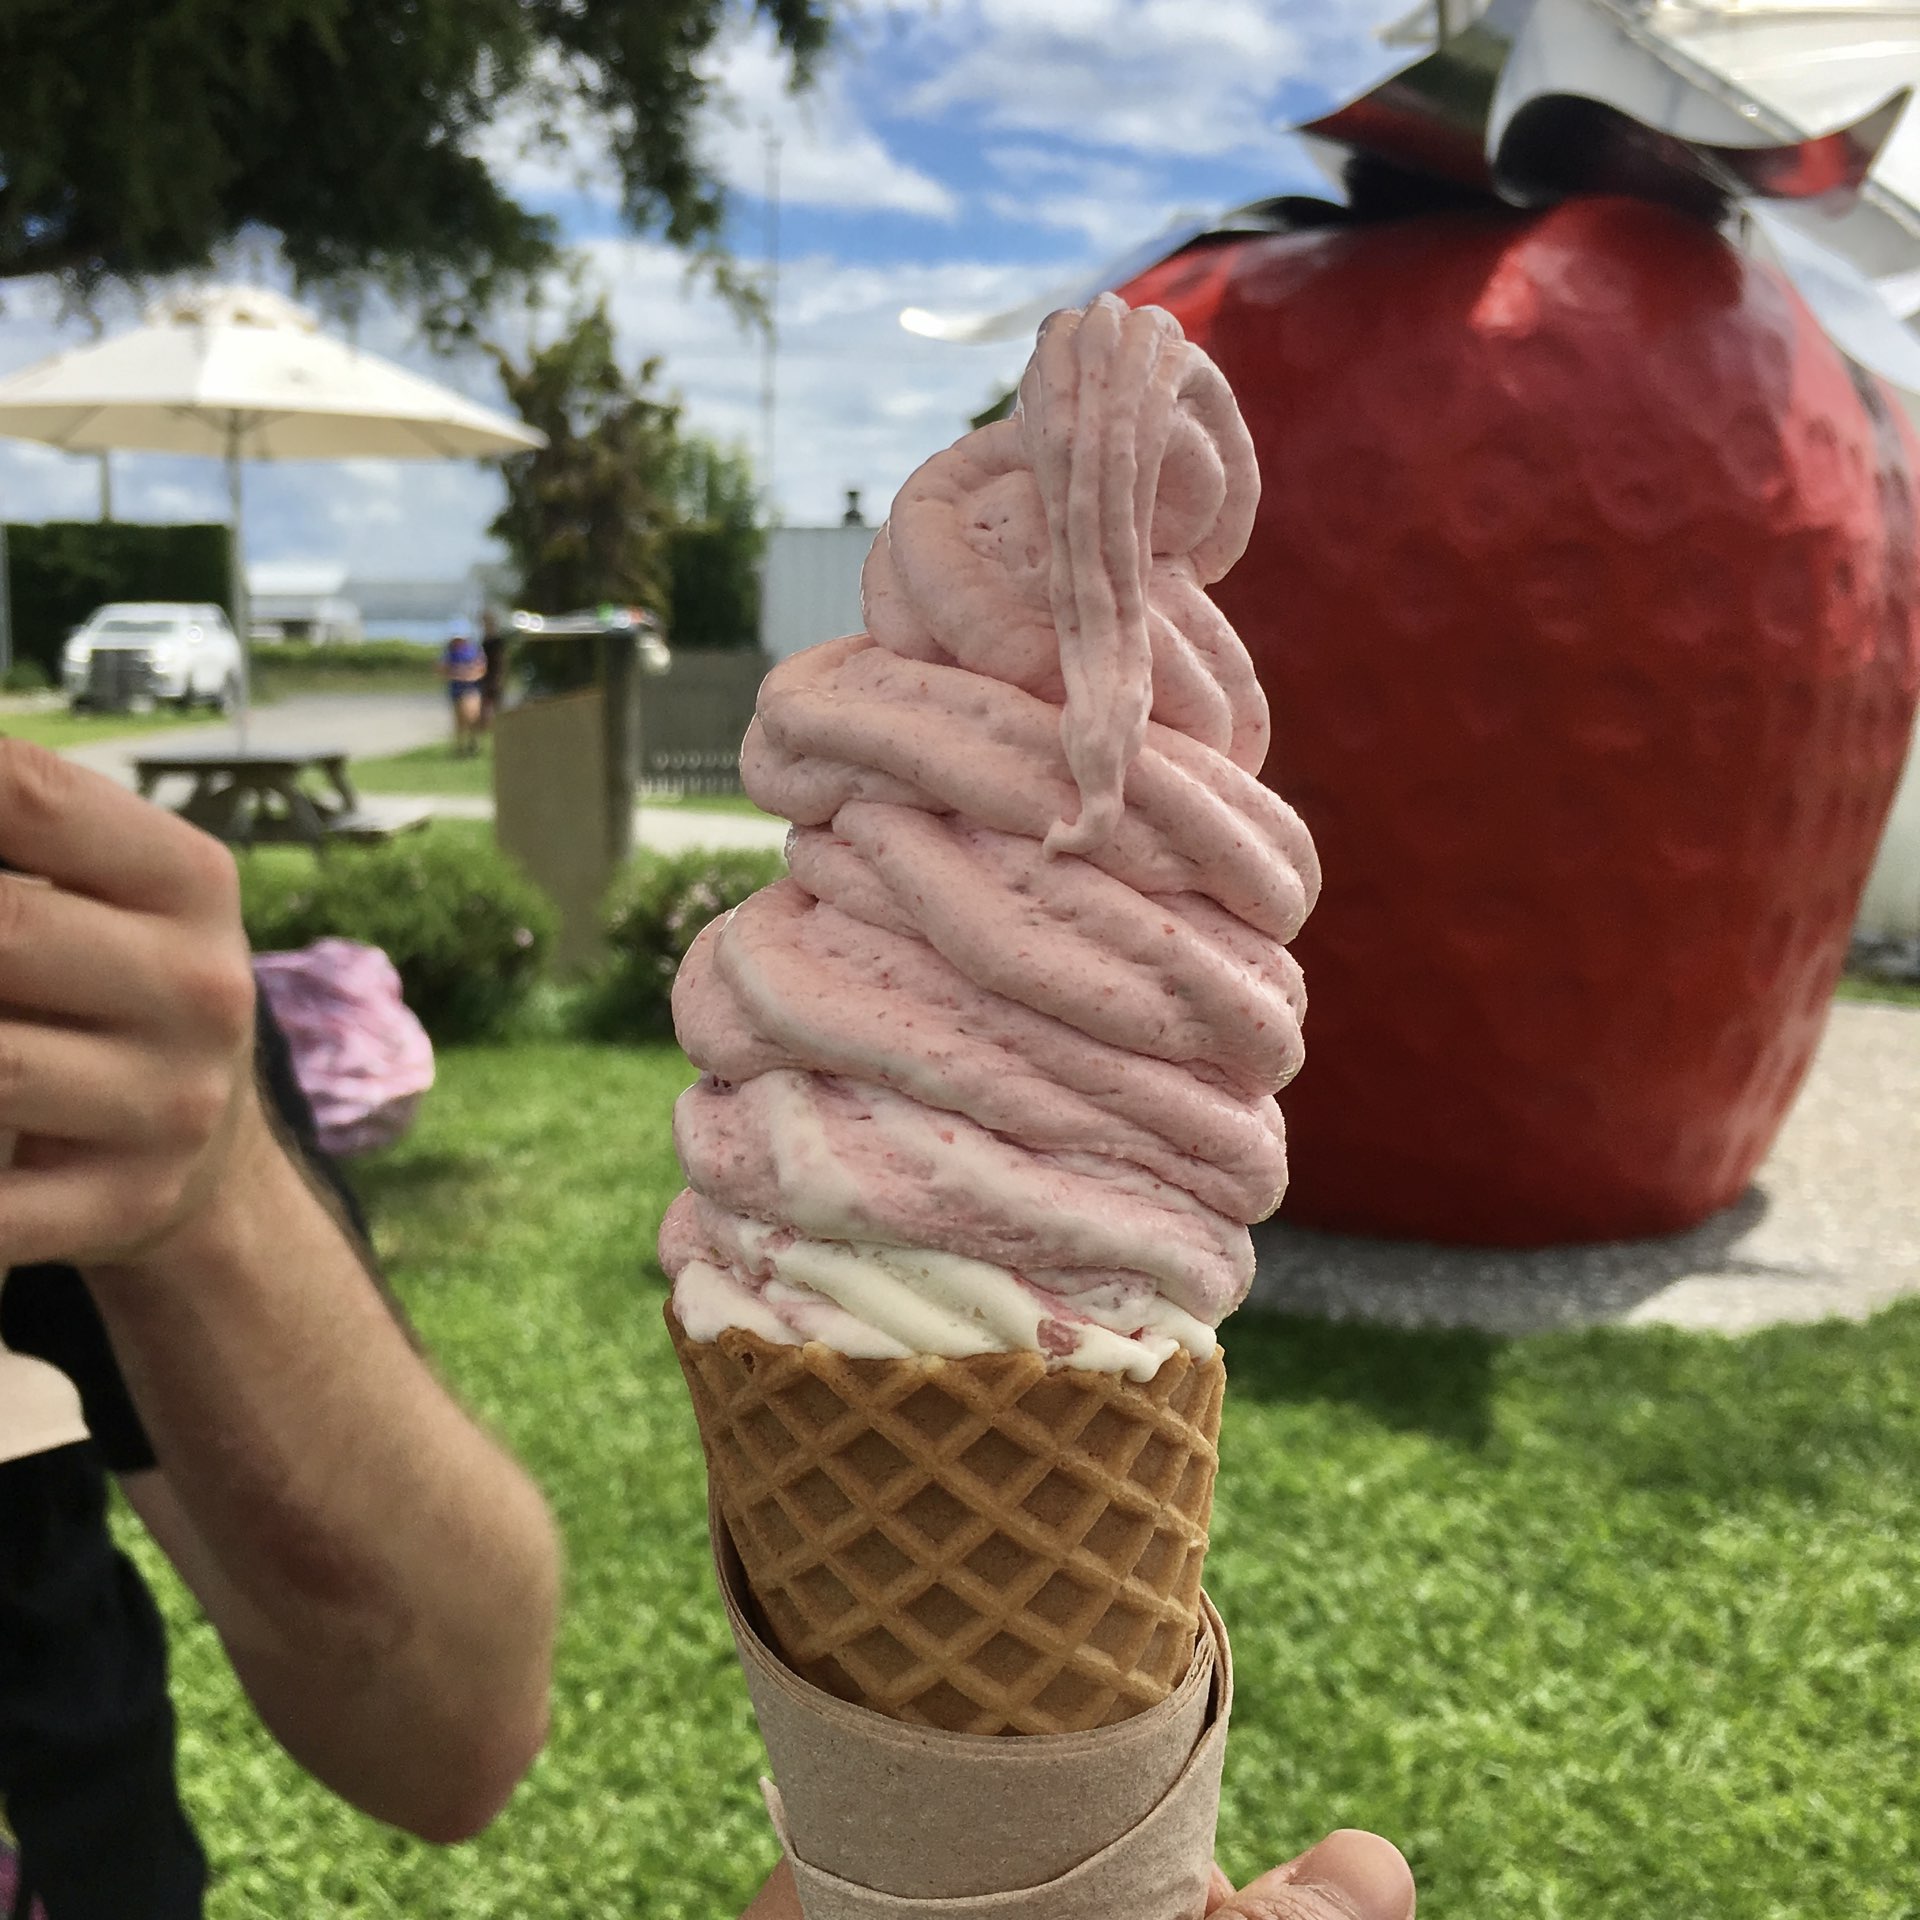 新西兰草莓农场经营的草莓冰淇淋店🍓